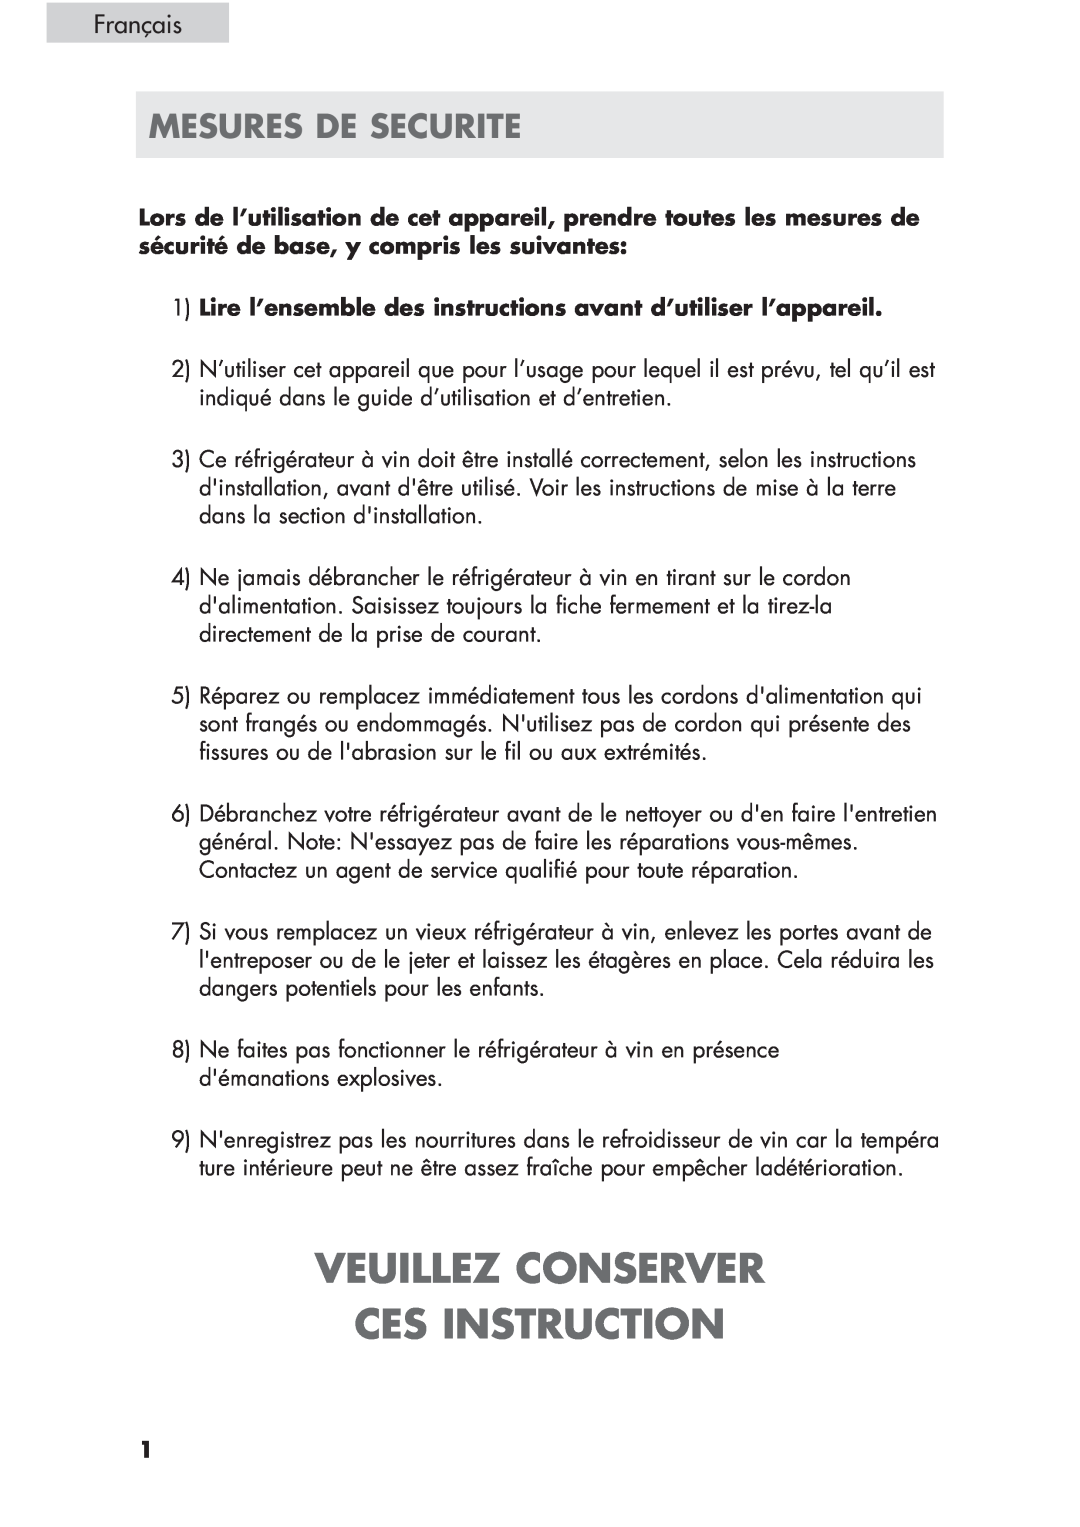 Haier HVCE24, HVCE15 user manual Veuillez Conserver Ces Instruction, Mesures De Securite, Français 